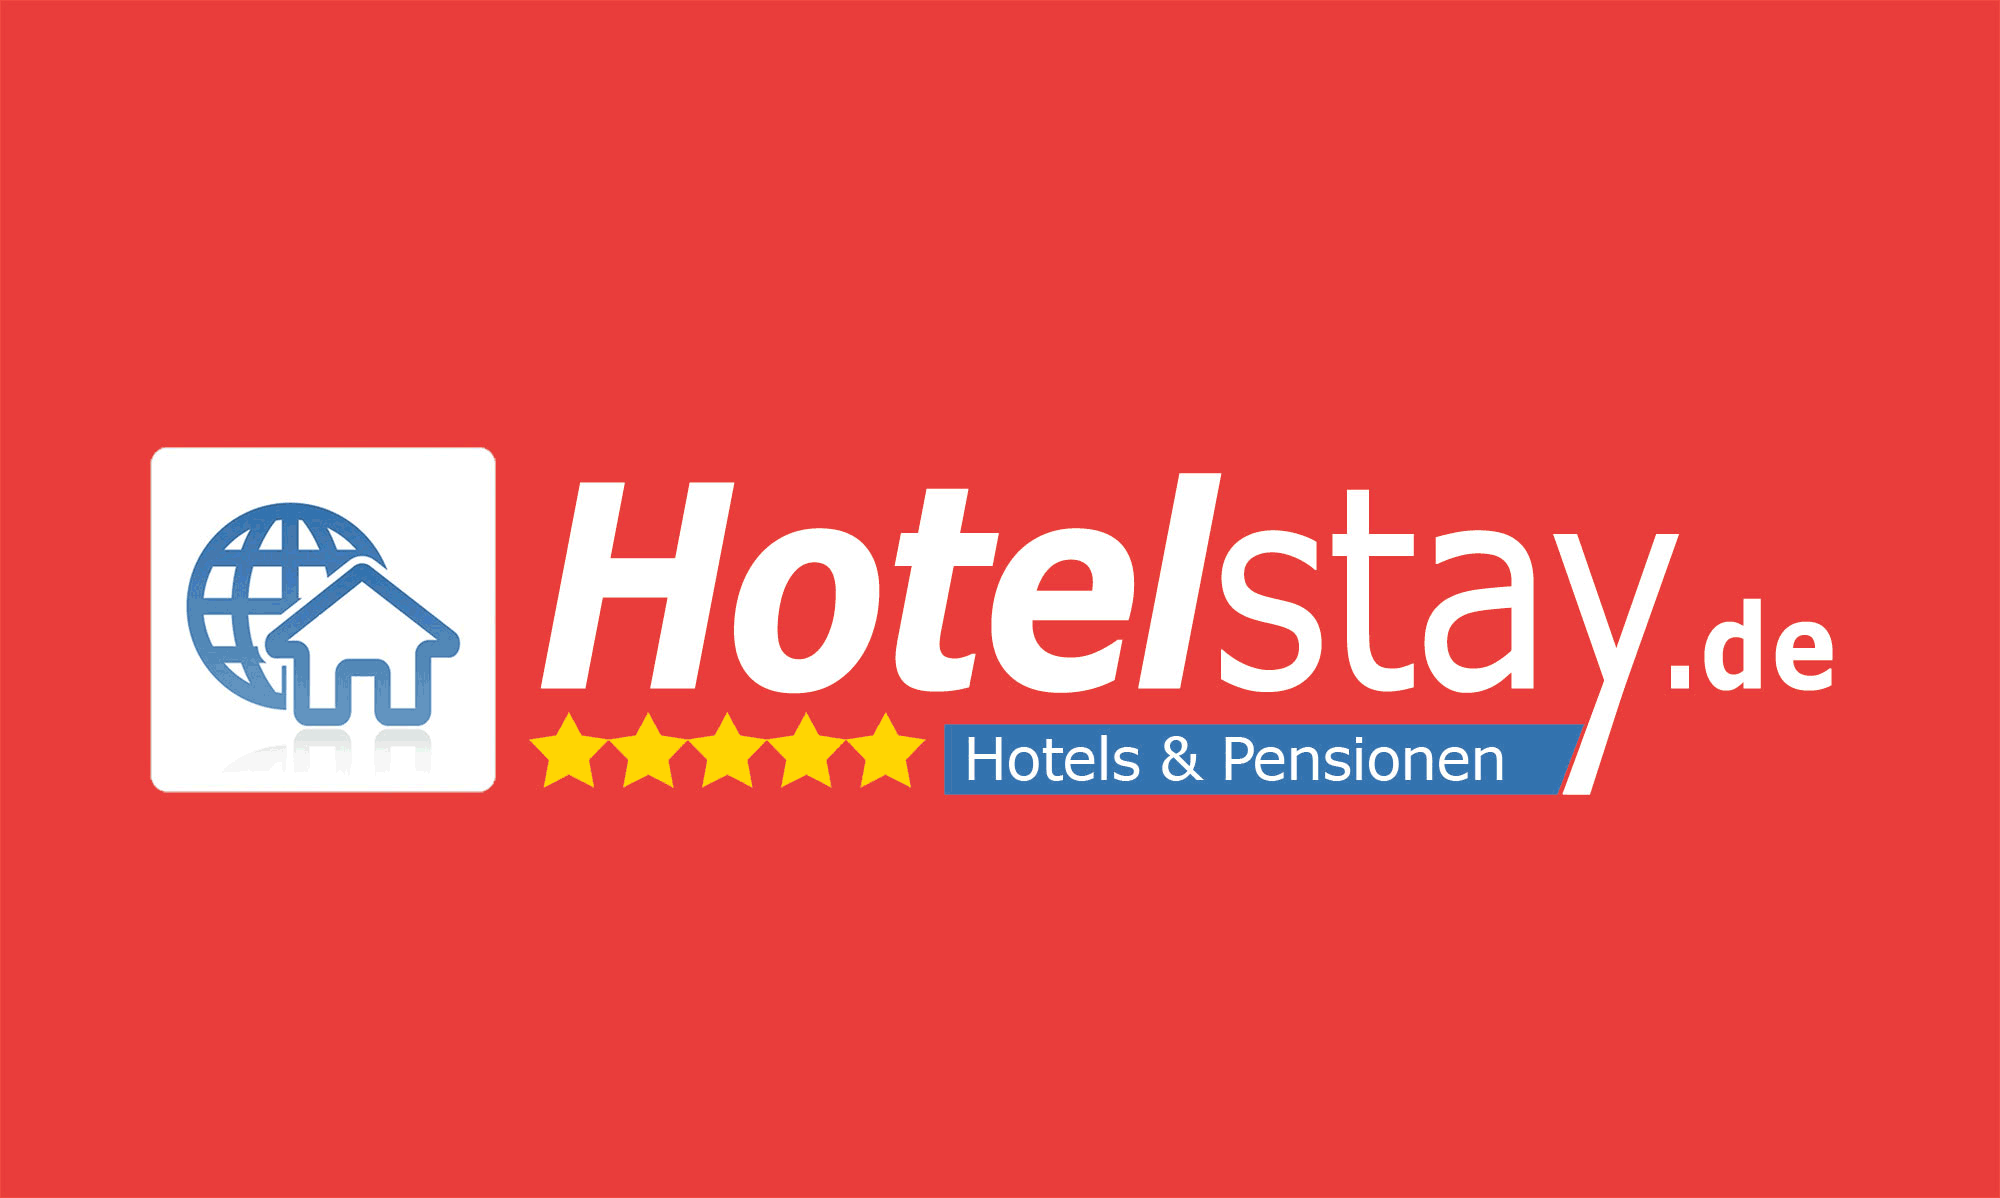 (c) Hotelstay.de